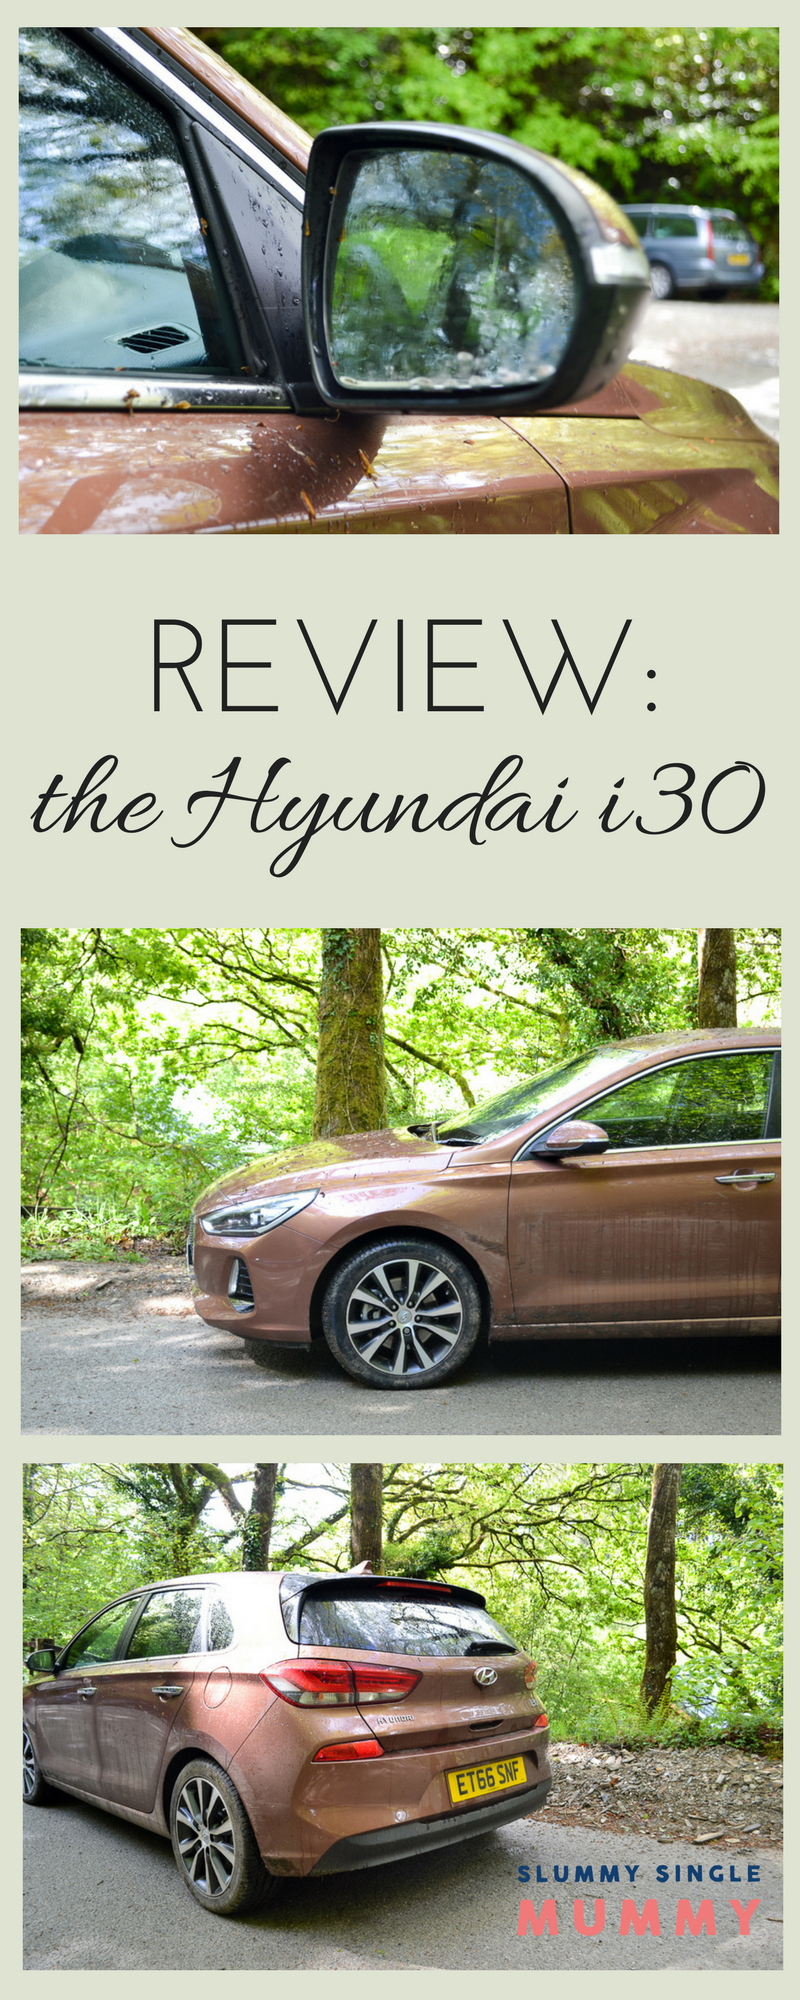 Hyundai i30 review